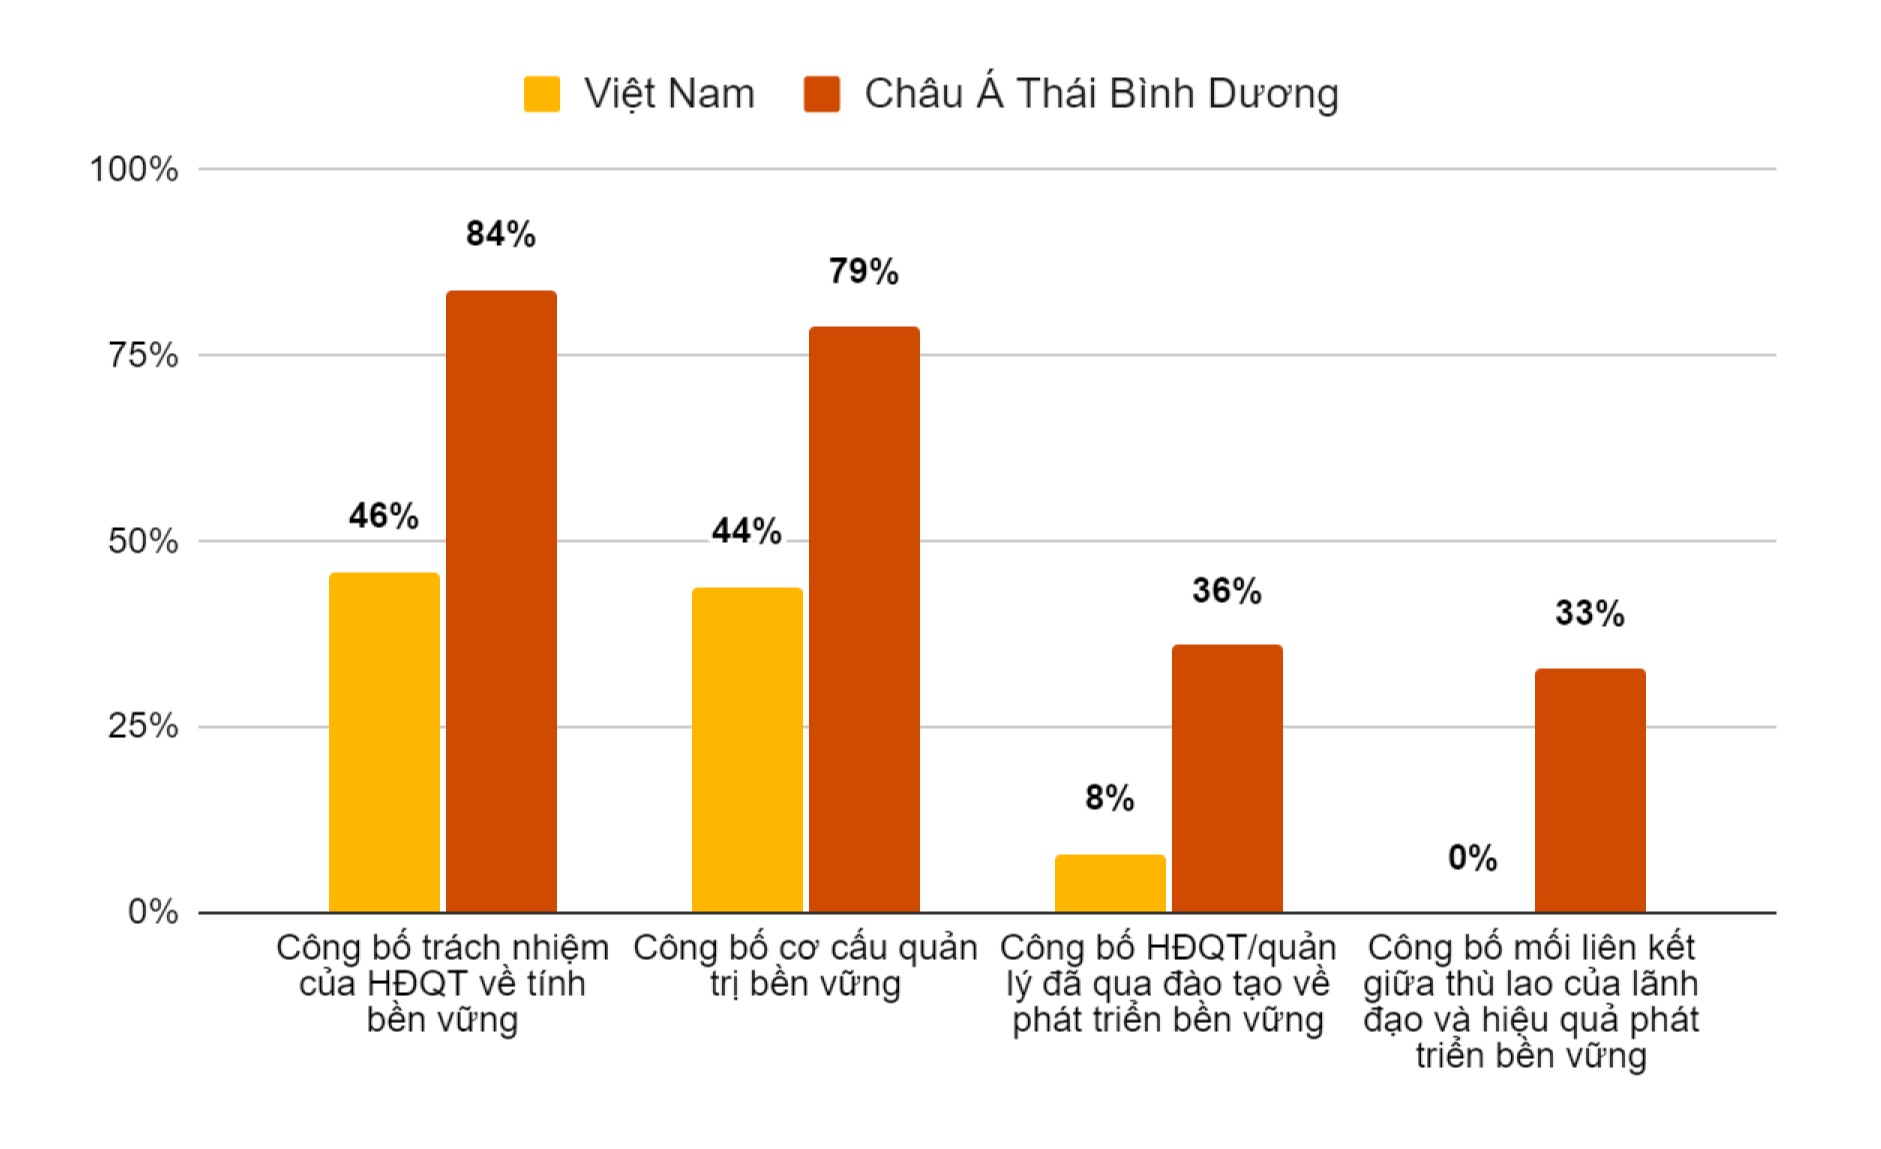 Bất ngờ cam kết phát triển bền vững của doanh nghiệp hàng đầu Việt Nam, chỉ 8% tiết lộ mục tiêu NetZero - Ảnh 2.